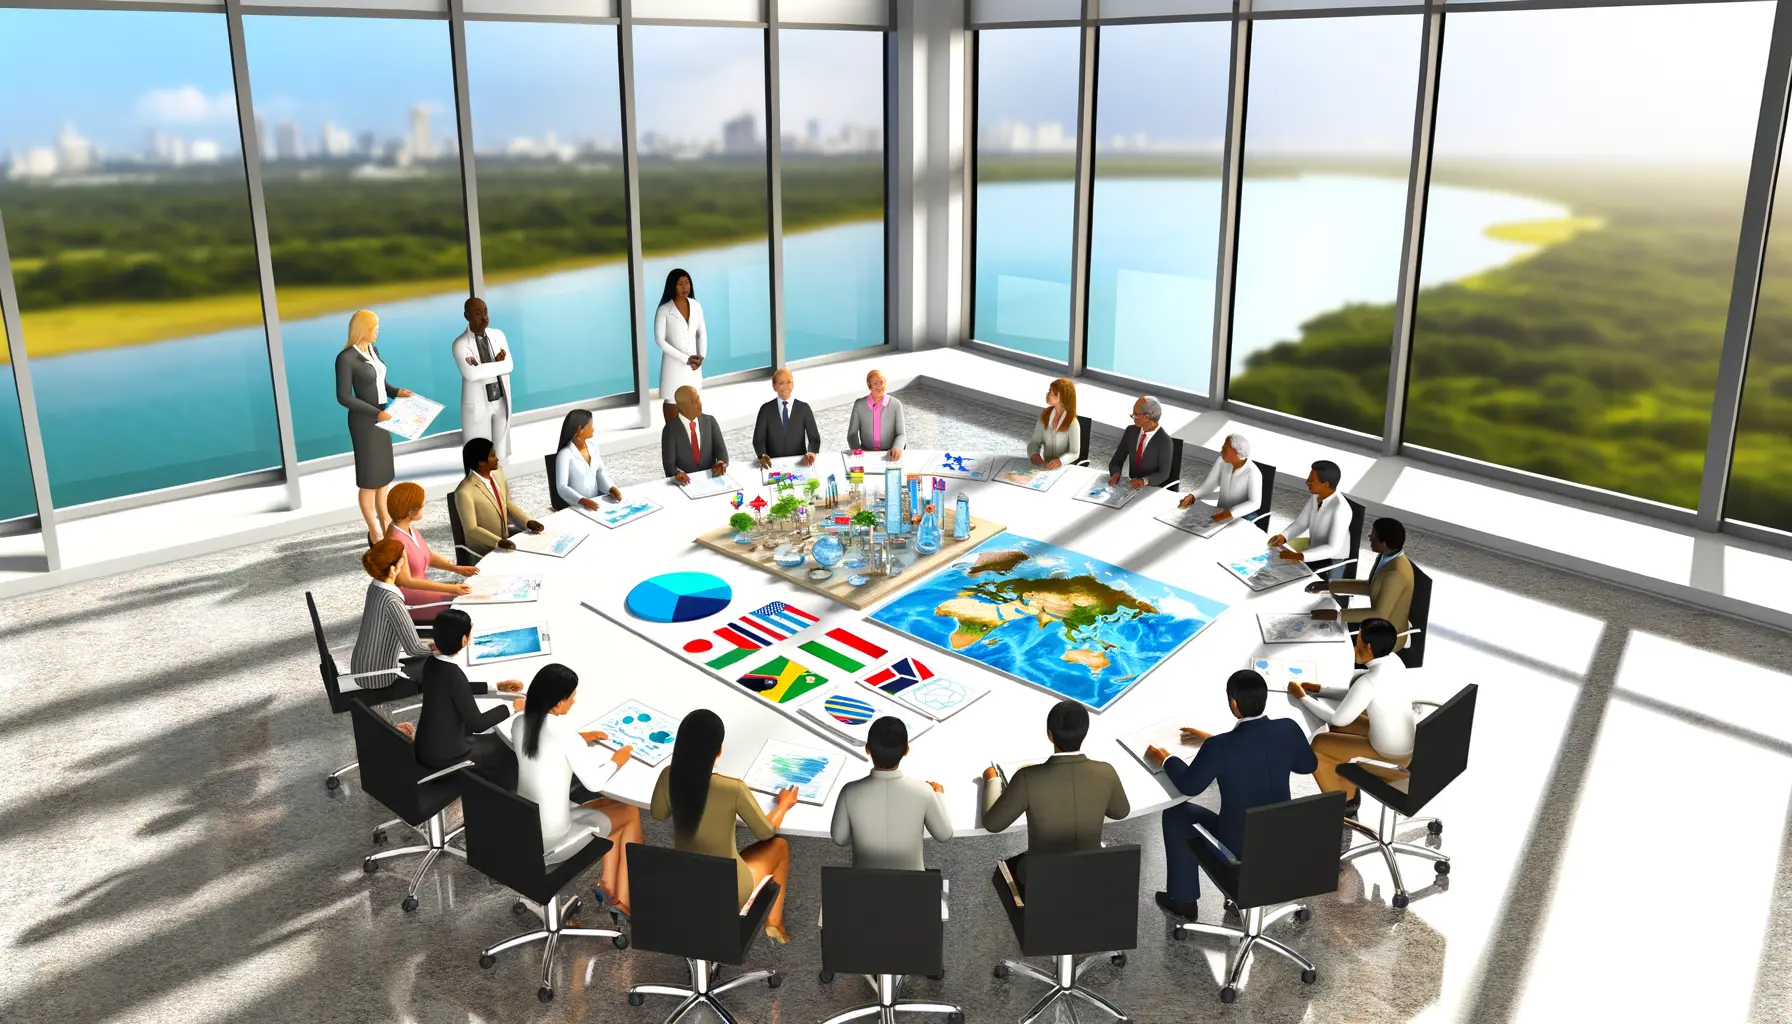 Digitale Illustration einer Versammlung von Menschen in einem Konferenzraum